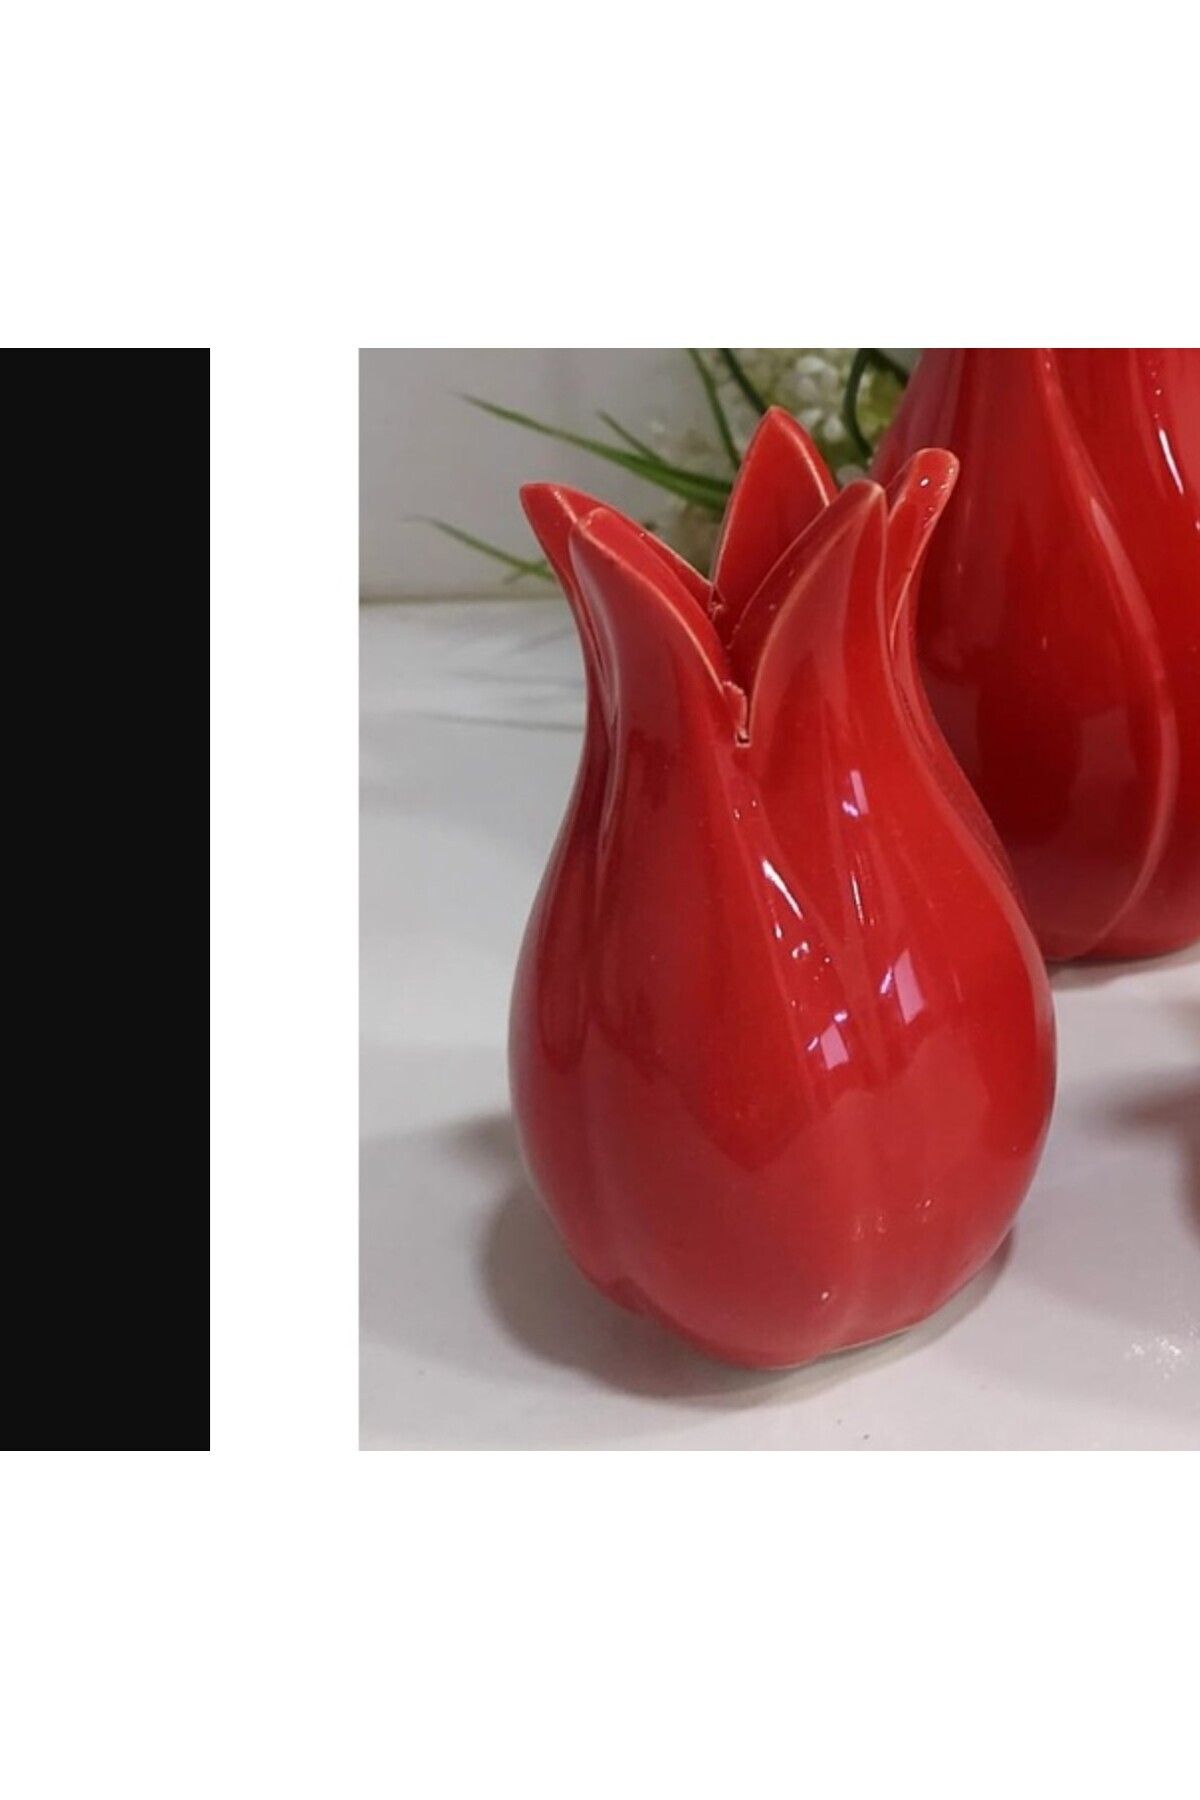 esdekor Lale Vazo Seramik Kırmızı Küçük Boy 10x6cm Şık Dekoratif Elit Çiçeklik Hediyelik Tarz 1 Adet